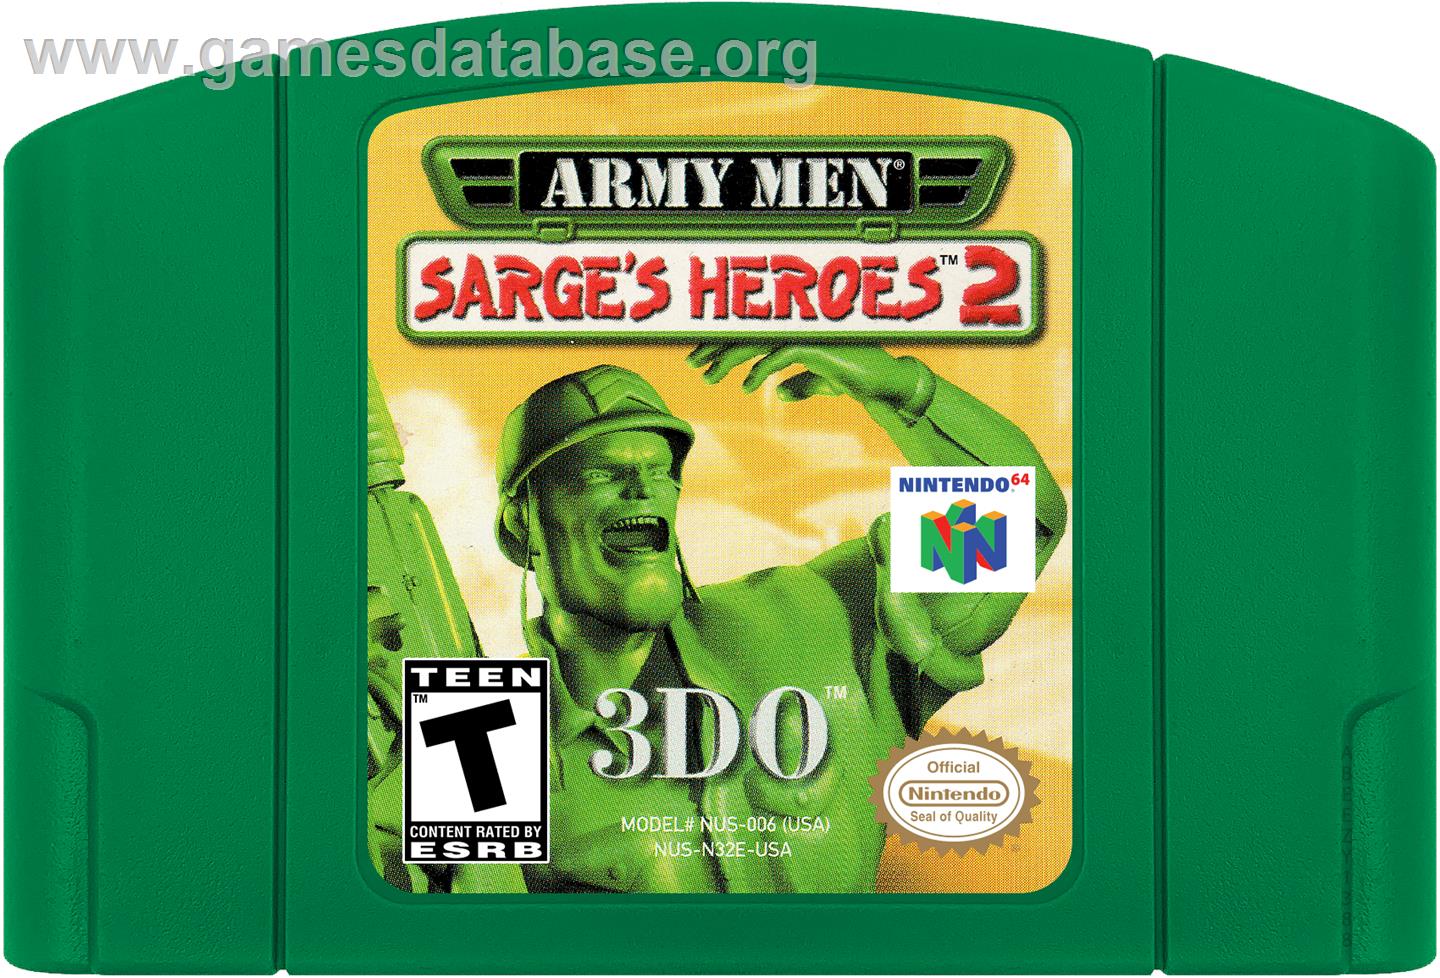 Army Men: Sarge's Heroes 2 - Nintendo N64 - Artwork - Cartridge